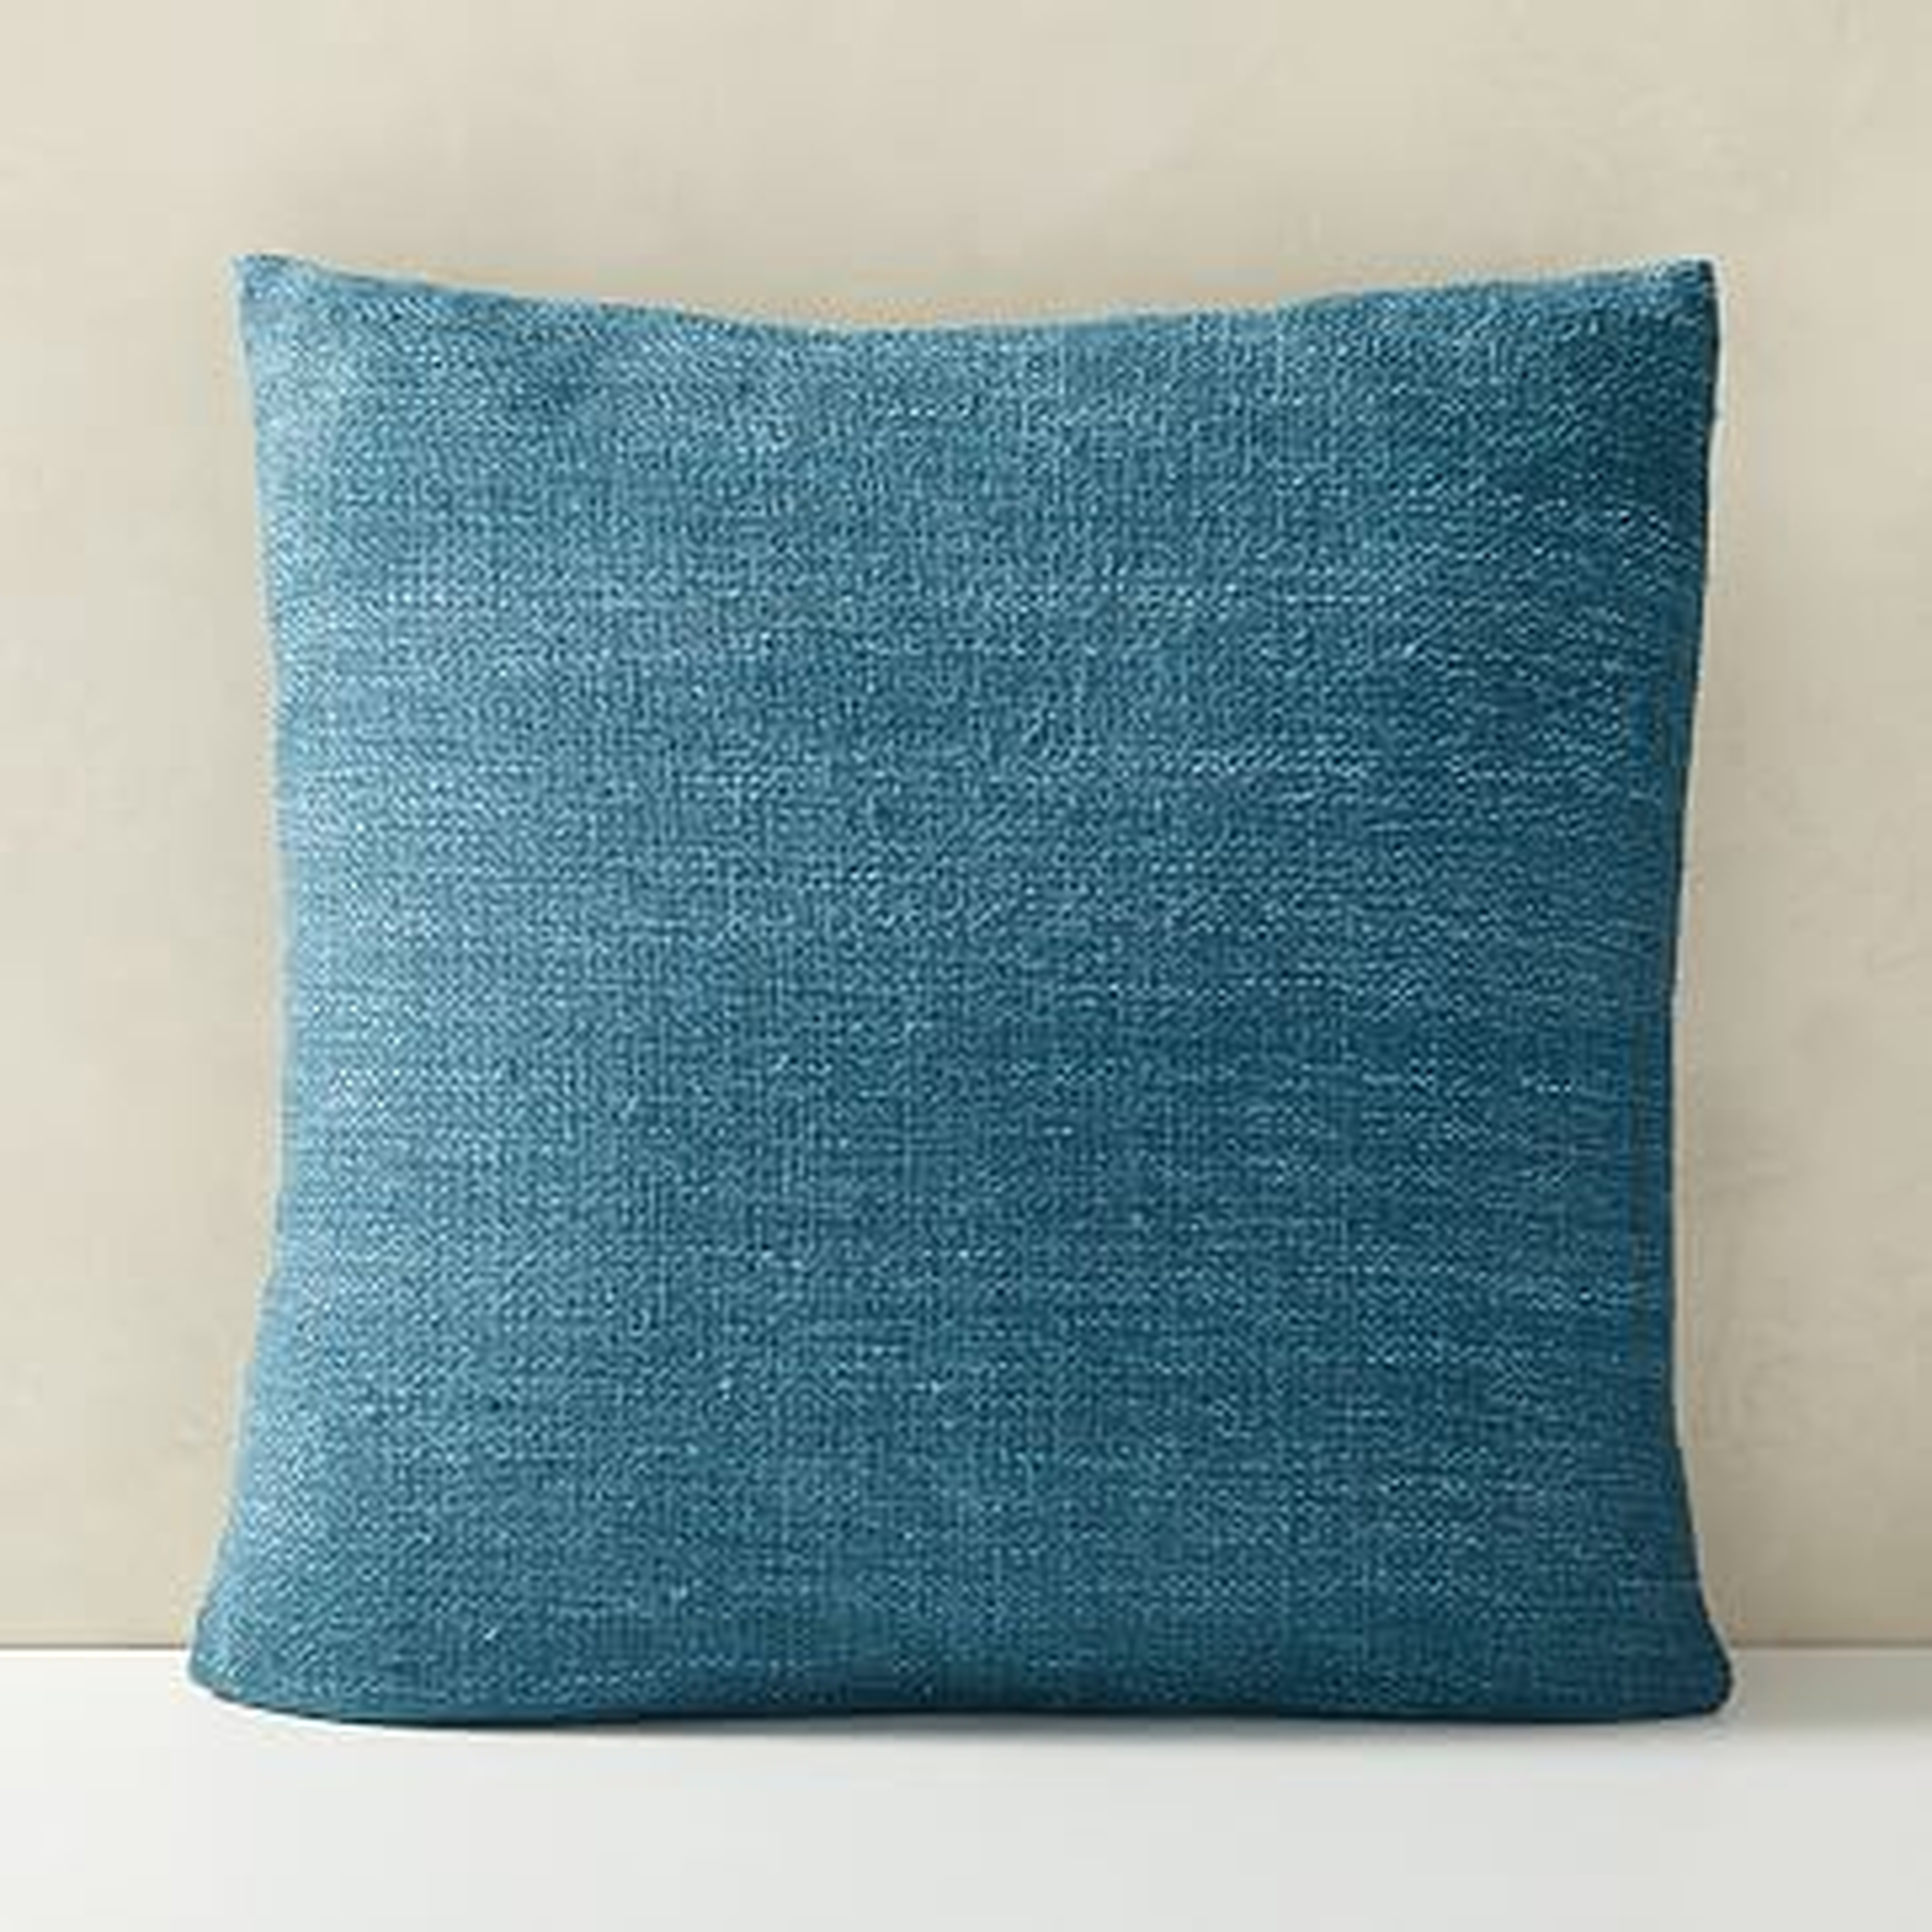 Silk Handloomed Pillow Cover, 20"x20", Shadow Blue - West Elm